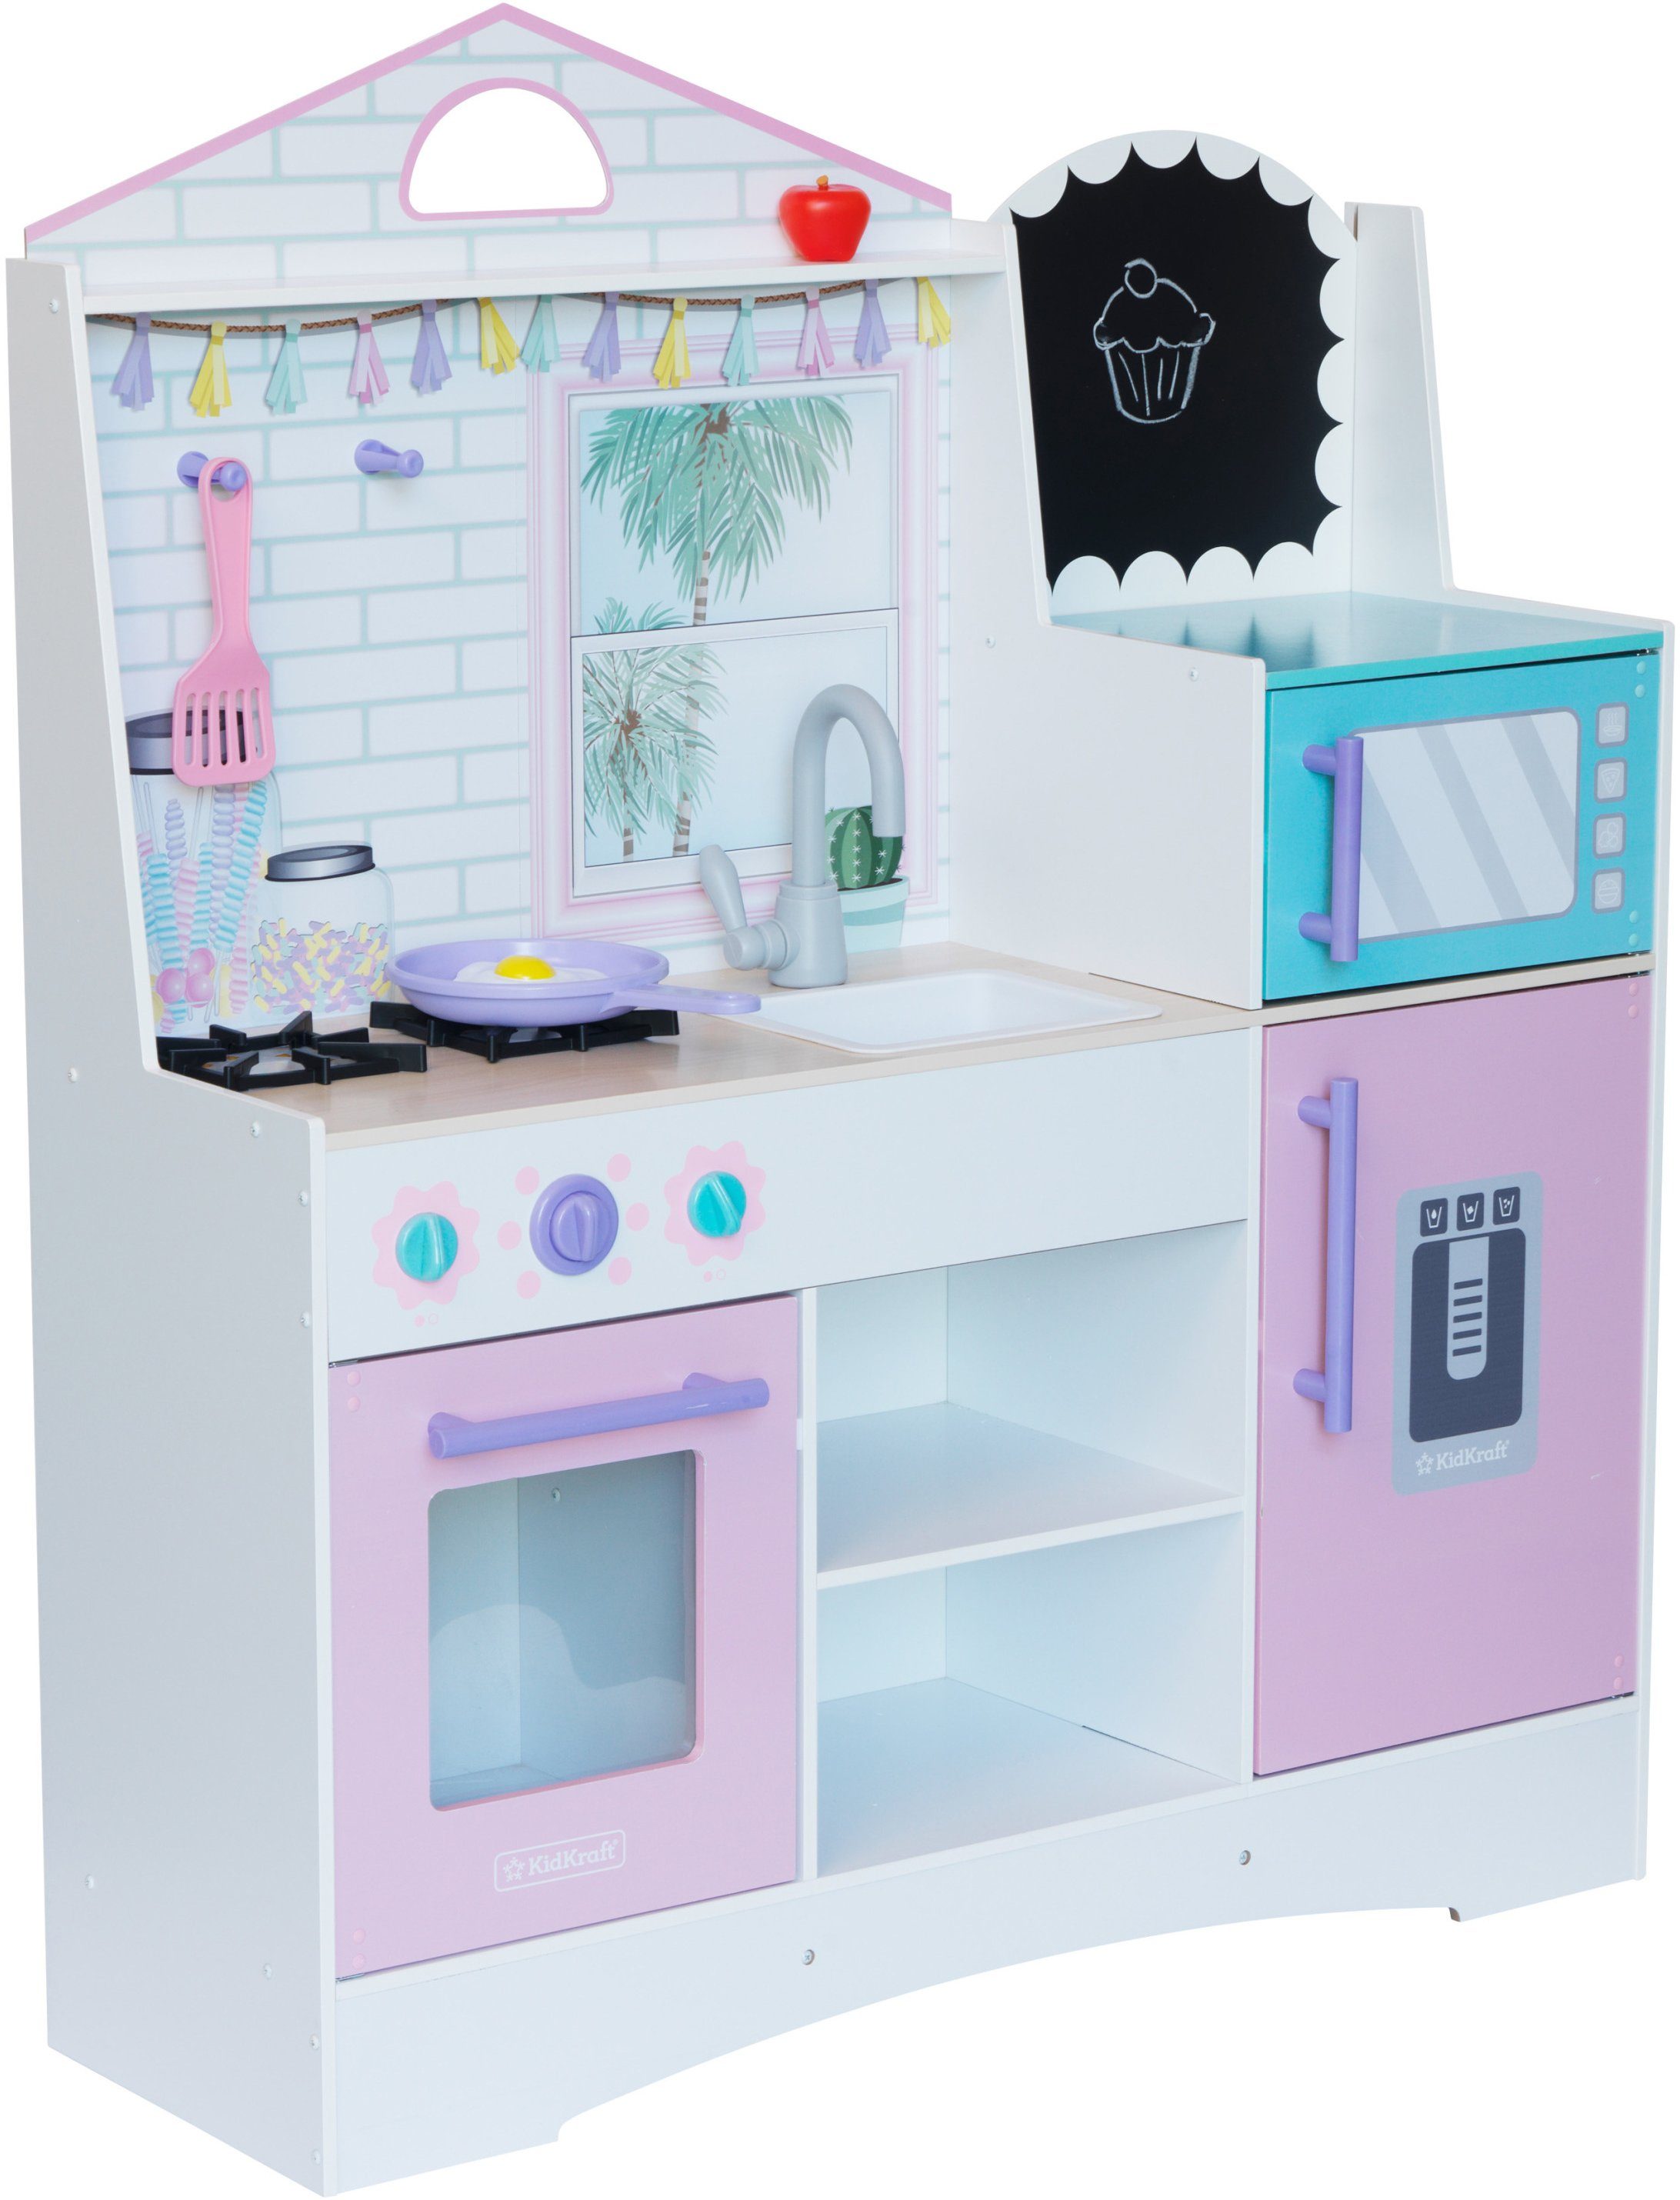 KidKraft® Spielküche »Dreamy Delights« MDF, Holz, Kunststoff, mit  Kreidetafel online kaufen | OTTO